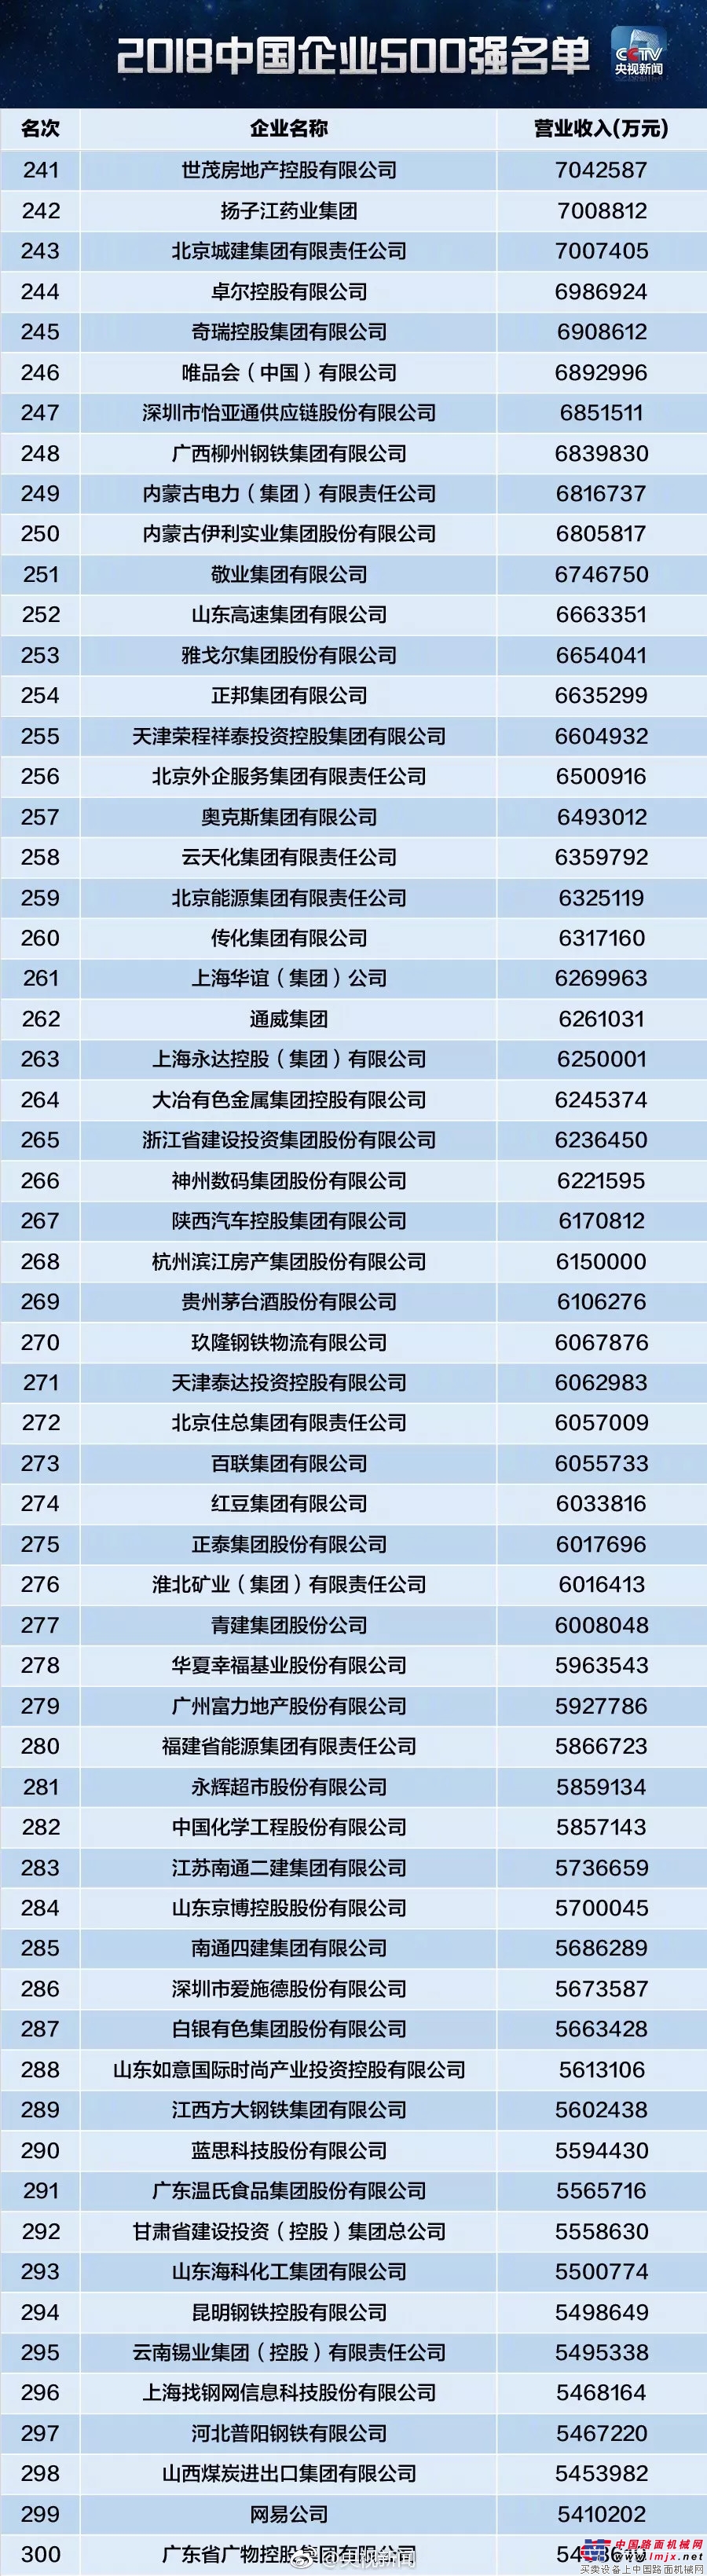 国机集团位列2018中国企业500强第61位 